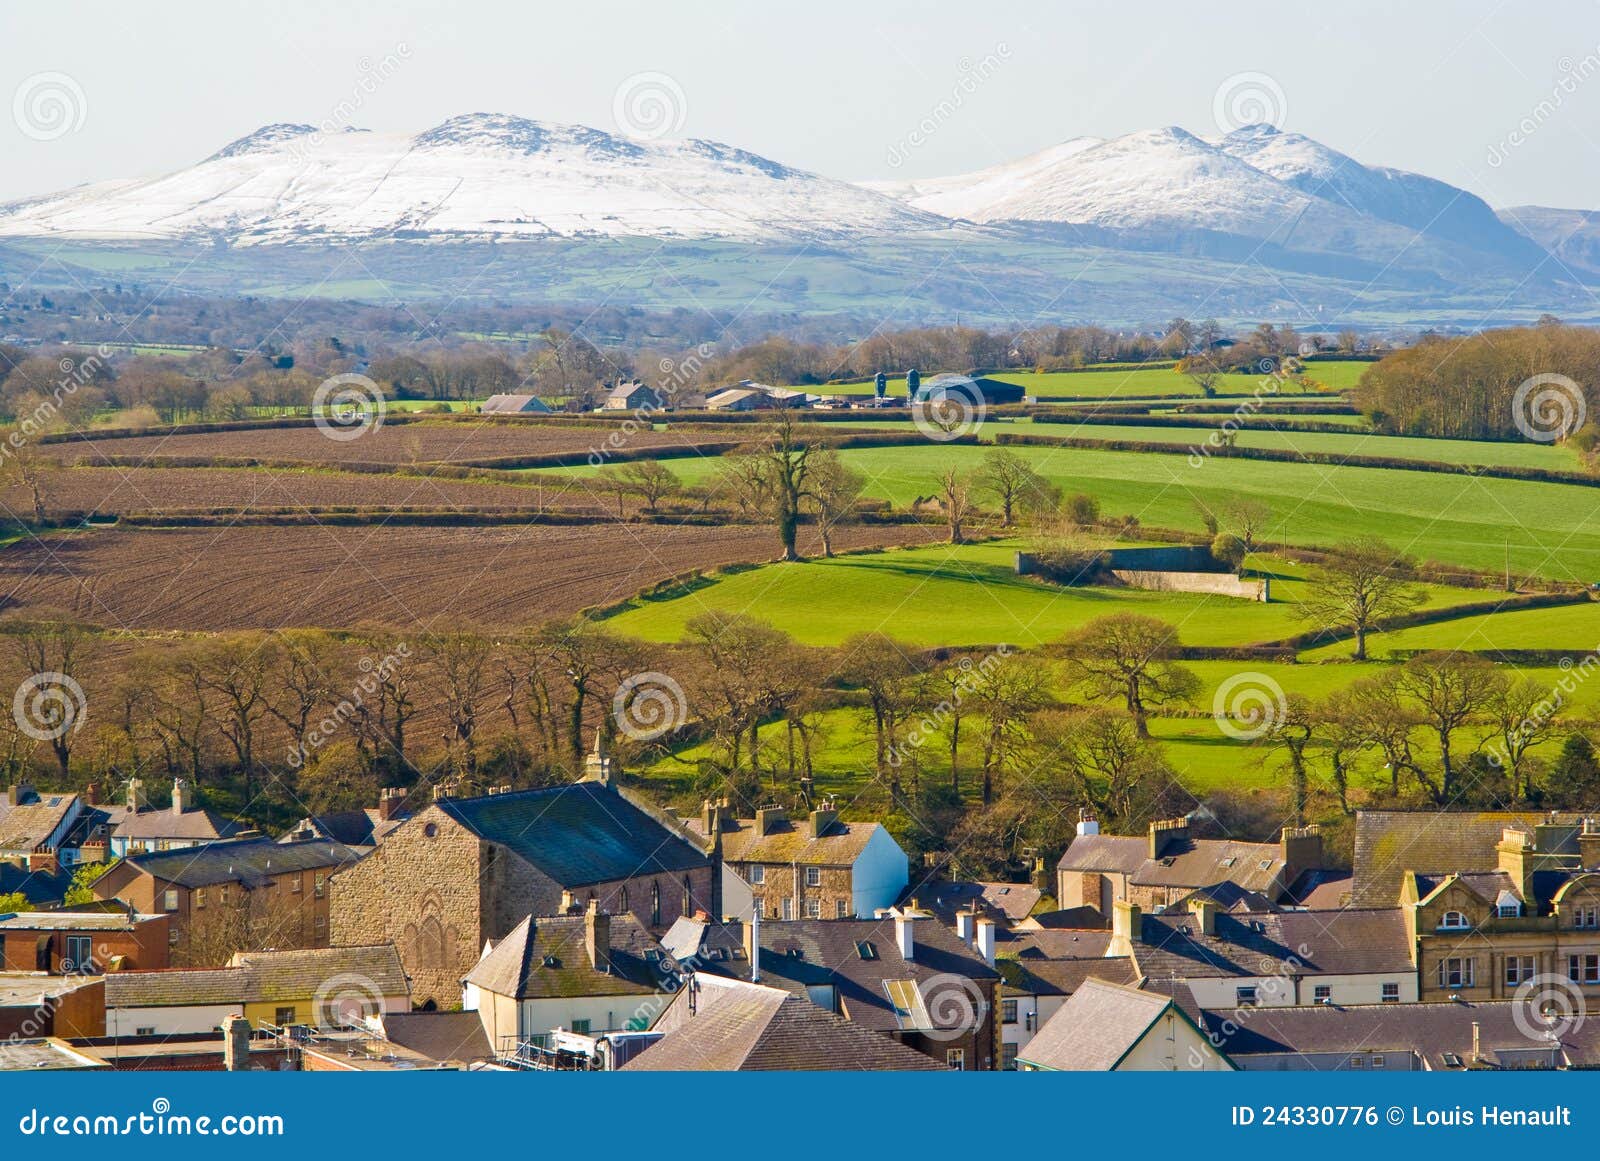 Caernarfon, Pays de Galles. La ville de Caernarfon et de neige a couvert des montagnes de Snowdonian, Pays de Galles, R-U